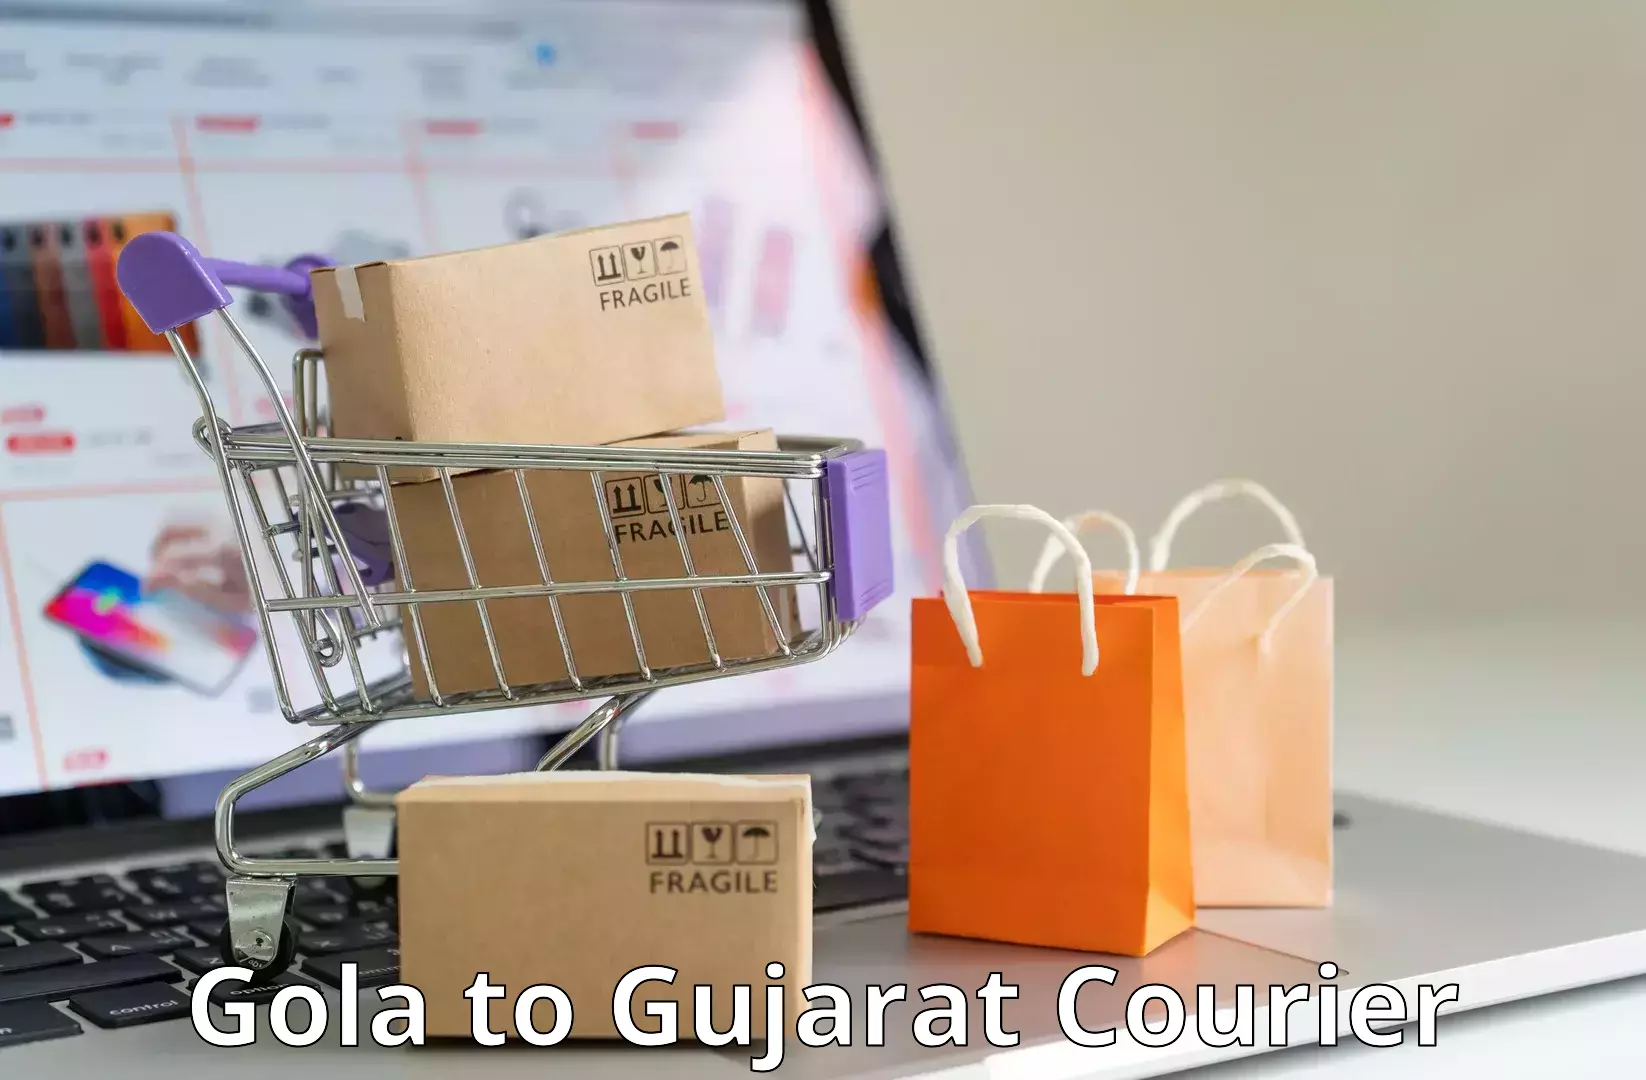 Smart logistics solutions Gola to Gujarat